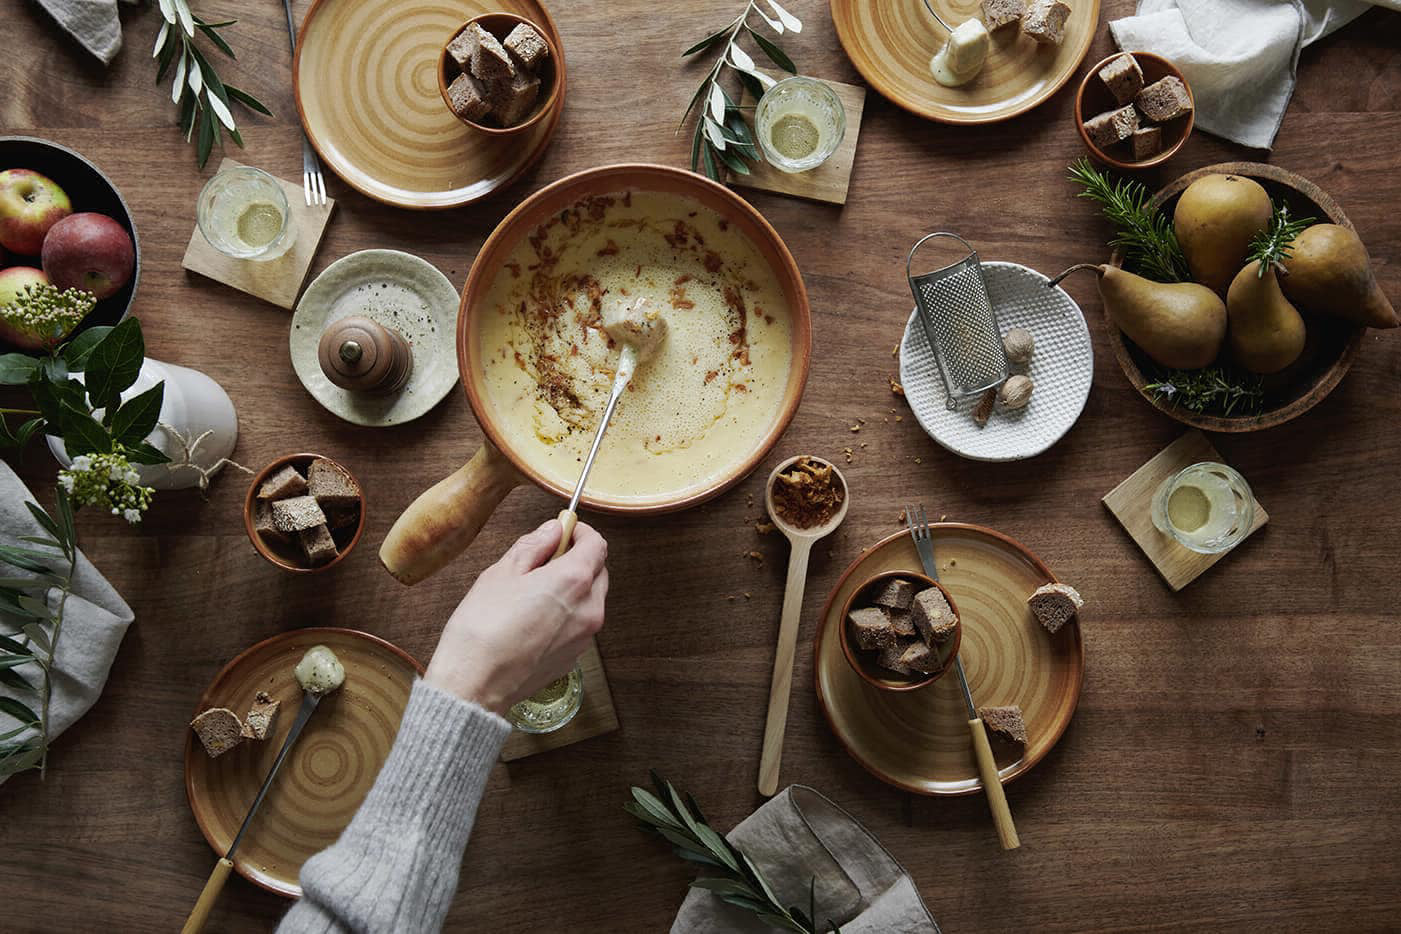 Fonduepfanne und diverse Teller und Lebensmittel auf einem Tisch